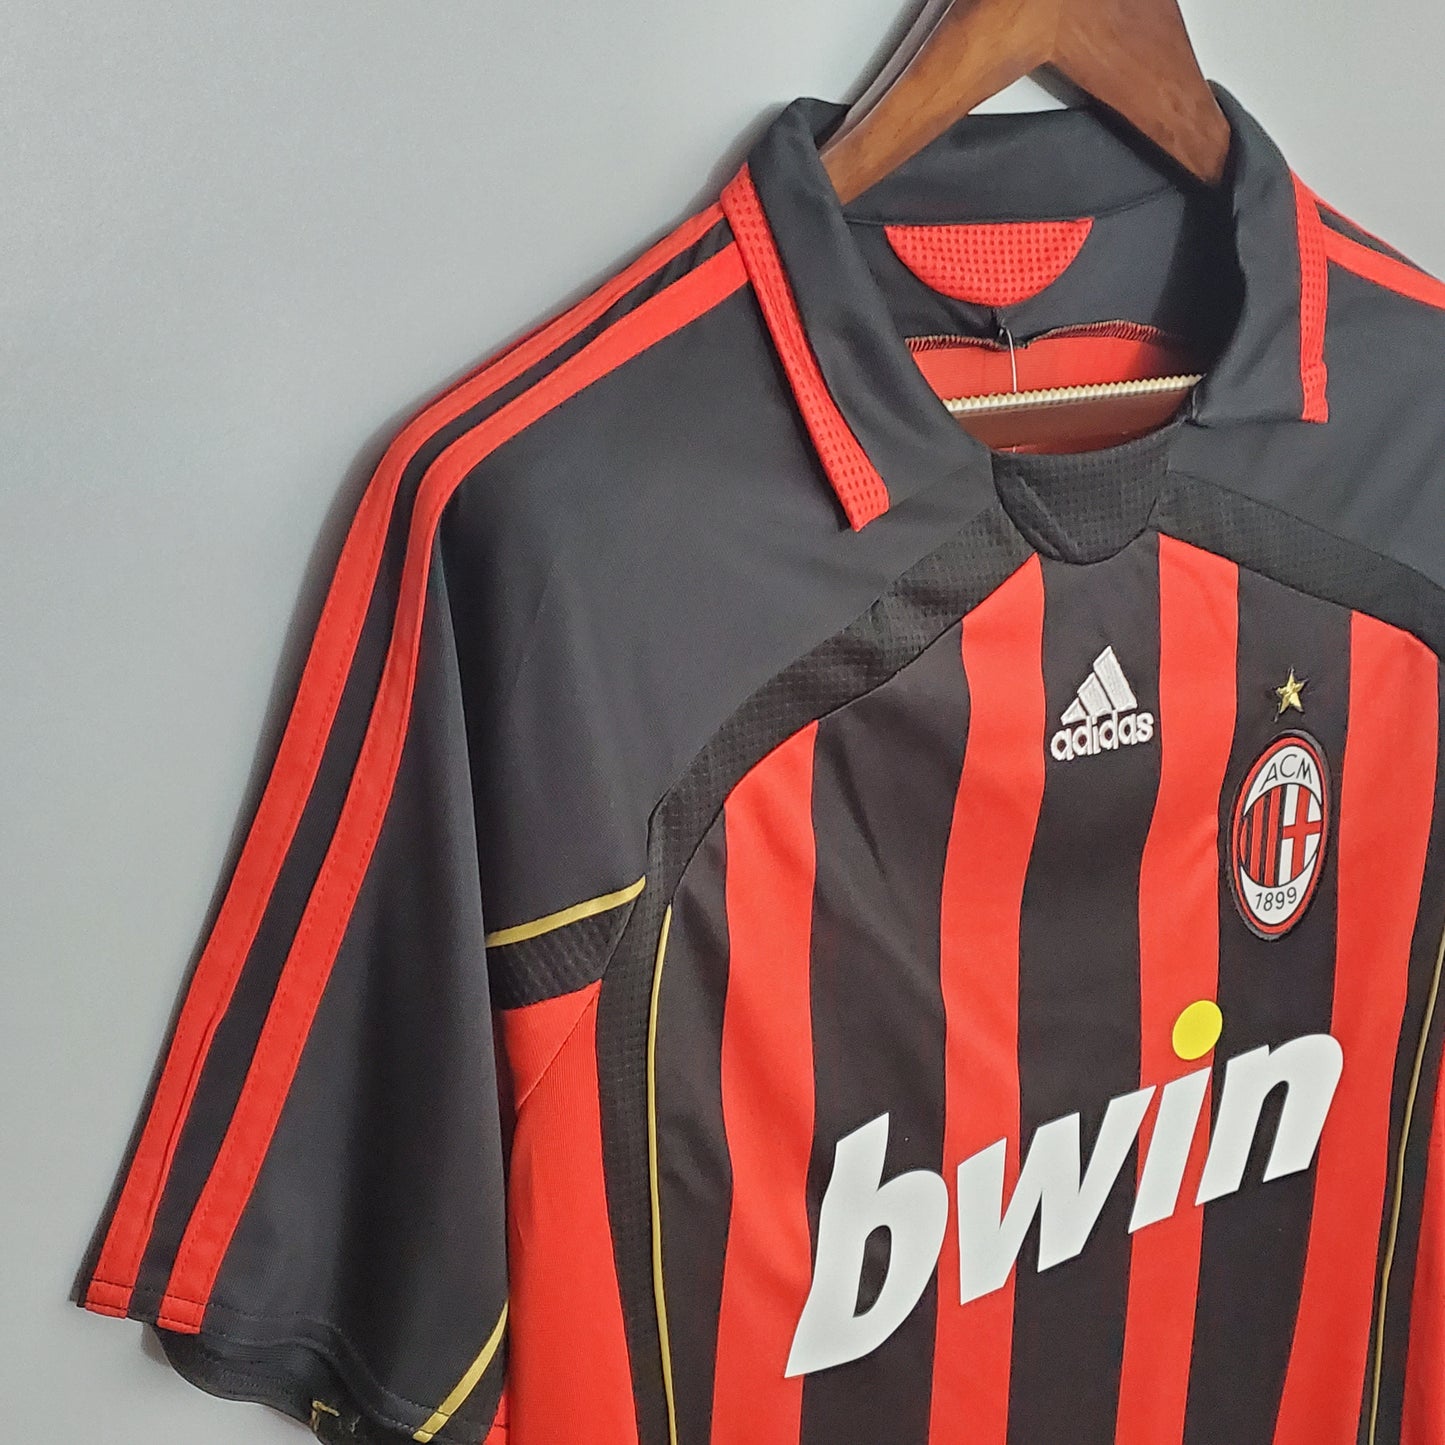 AC Milan 2006/07 Home Jersey